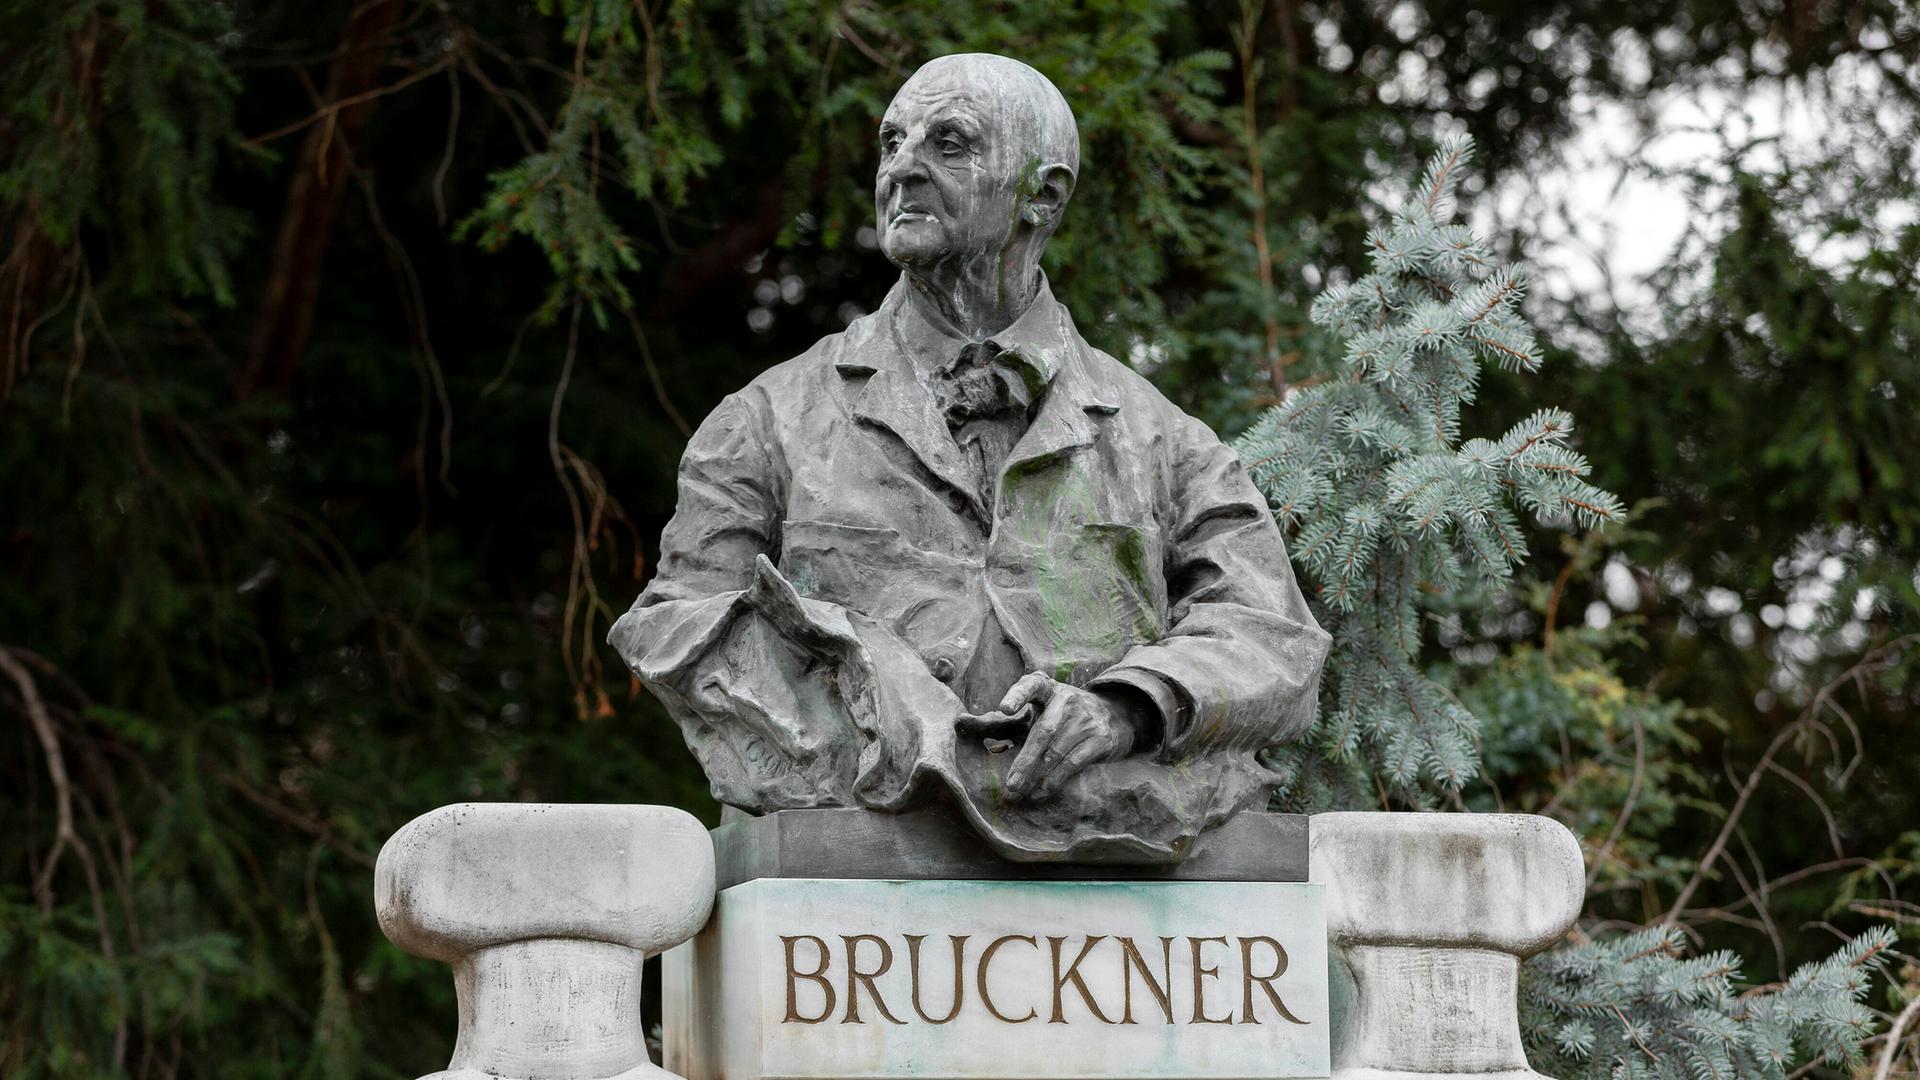 Blick auf eine Büste Bruckners, die in einem Park auf einem Sockel mit dem Schriftzug "Bruckner" ruht.